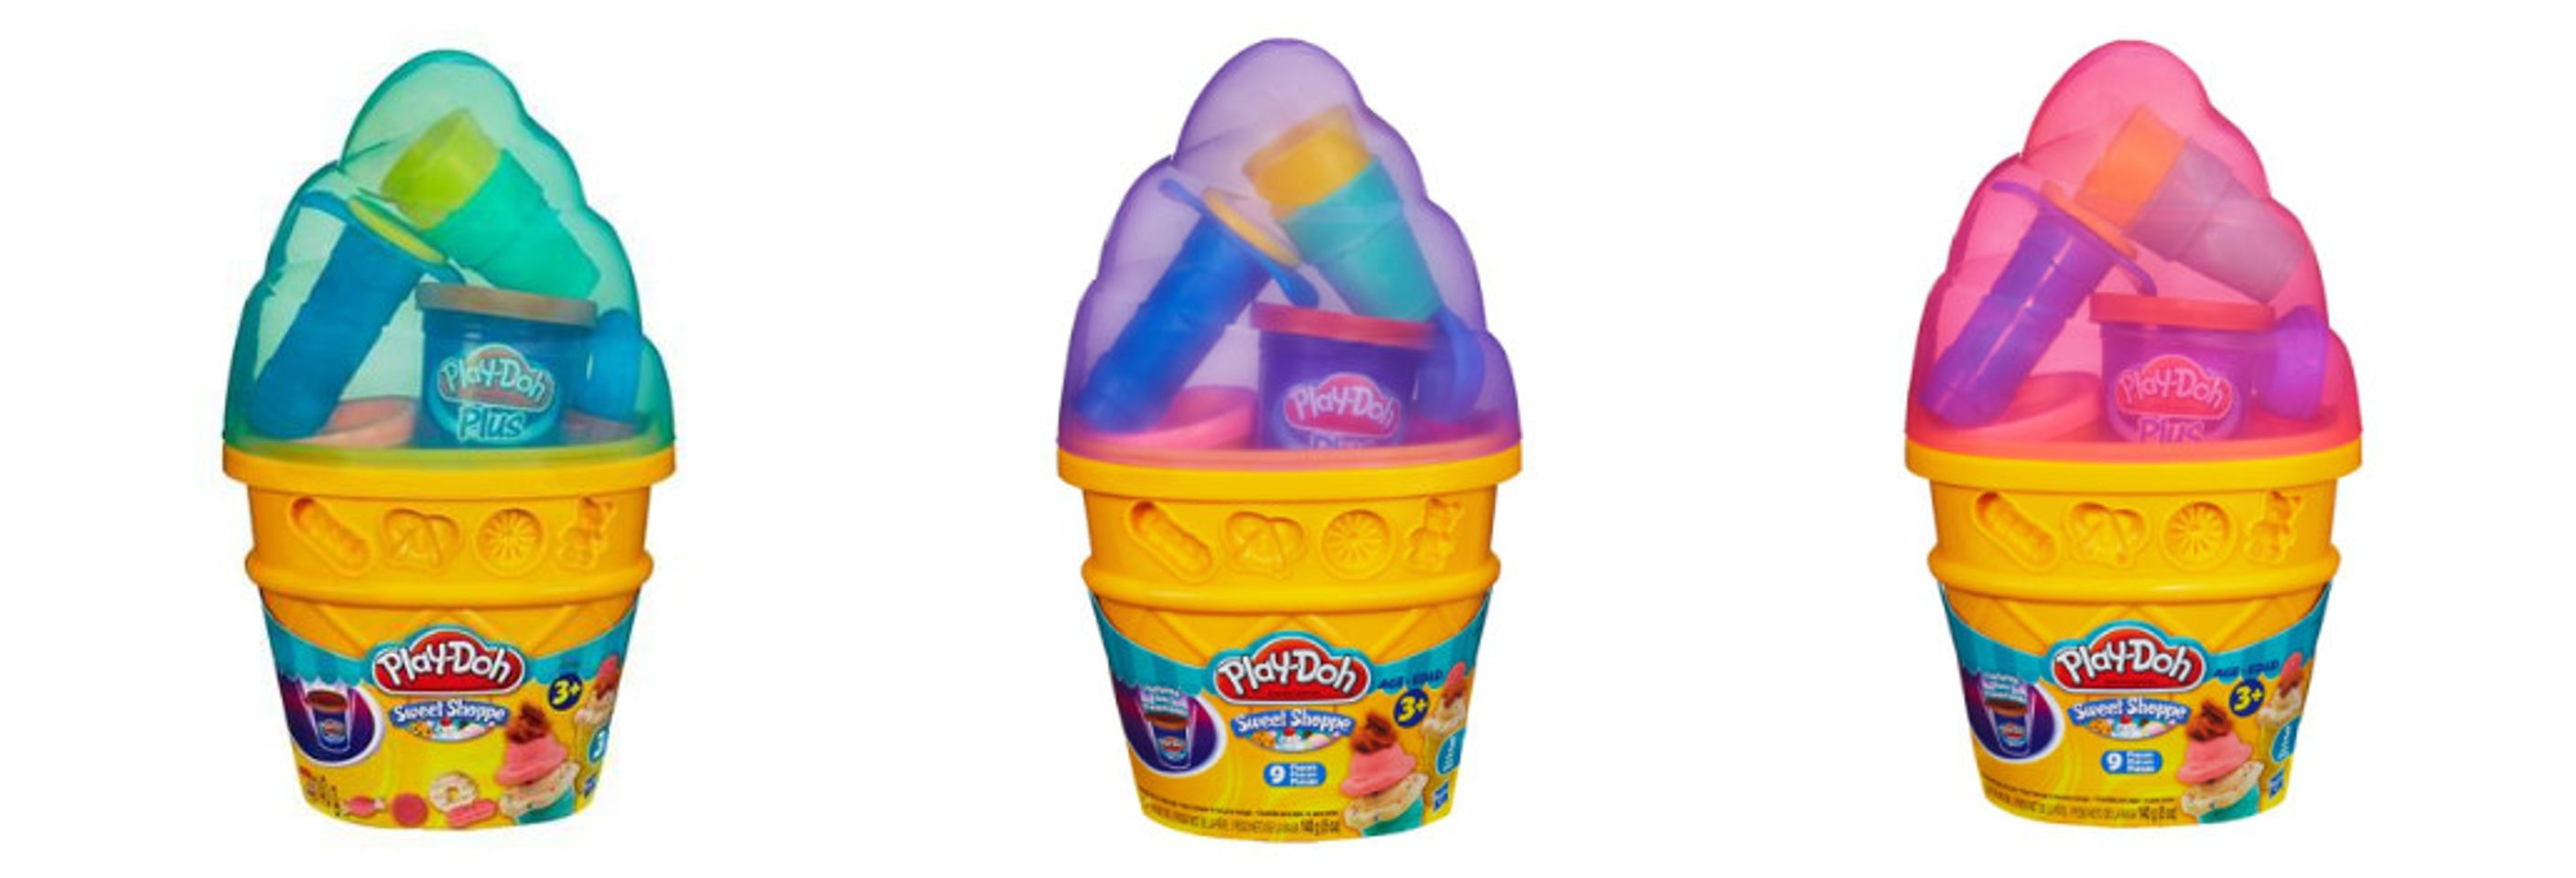 Bộ đồ chơi đất nặn Play-doh máy làm kem với 3 màu khác nhau